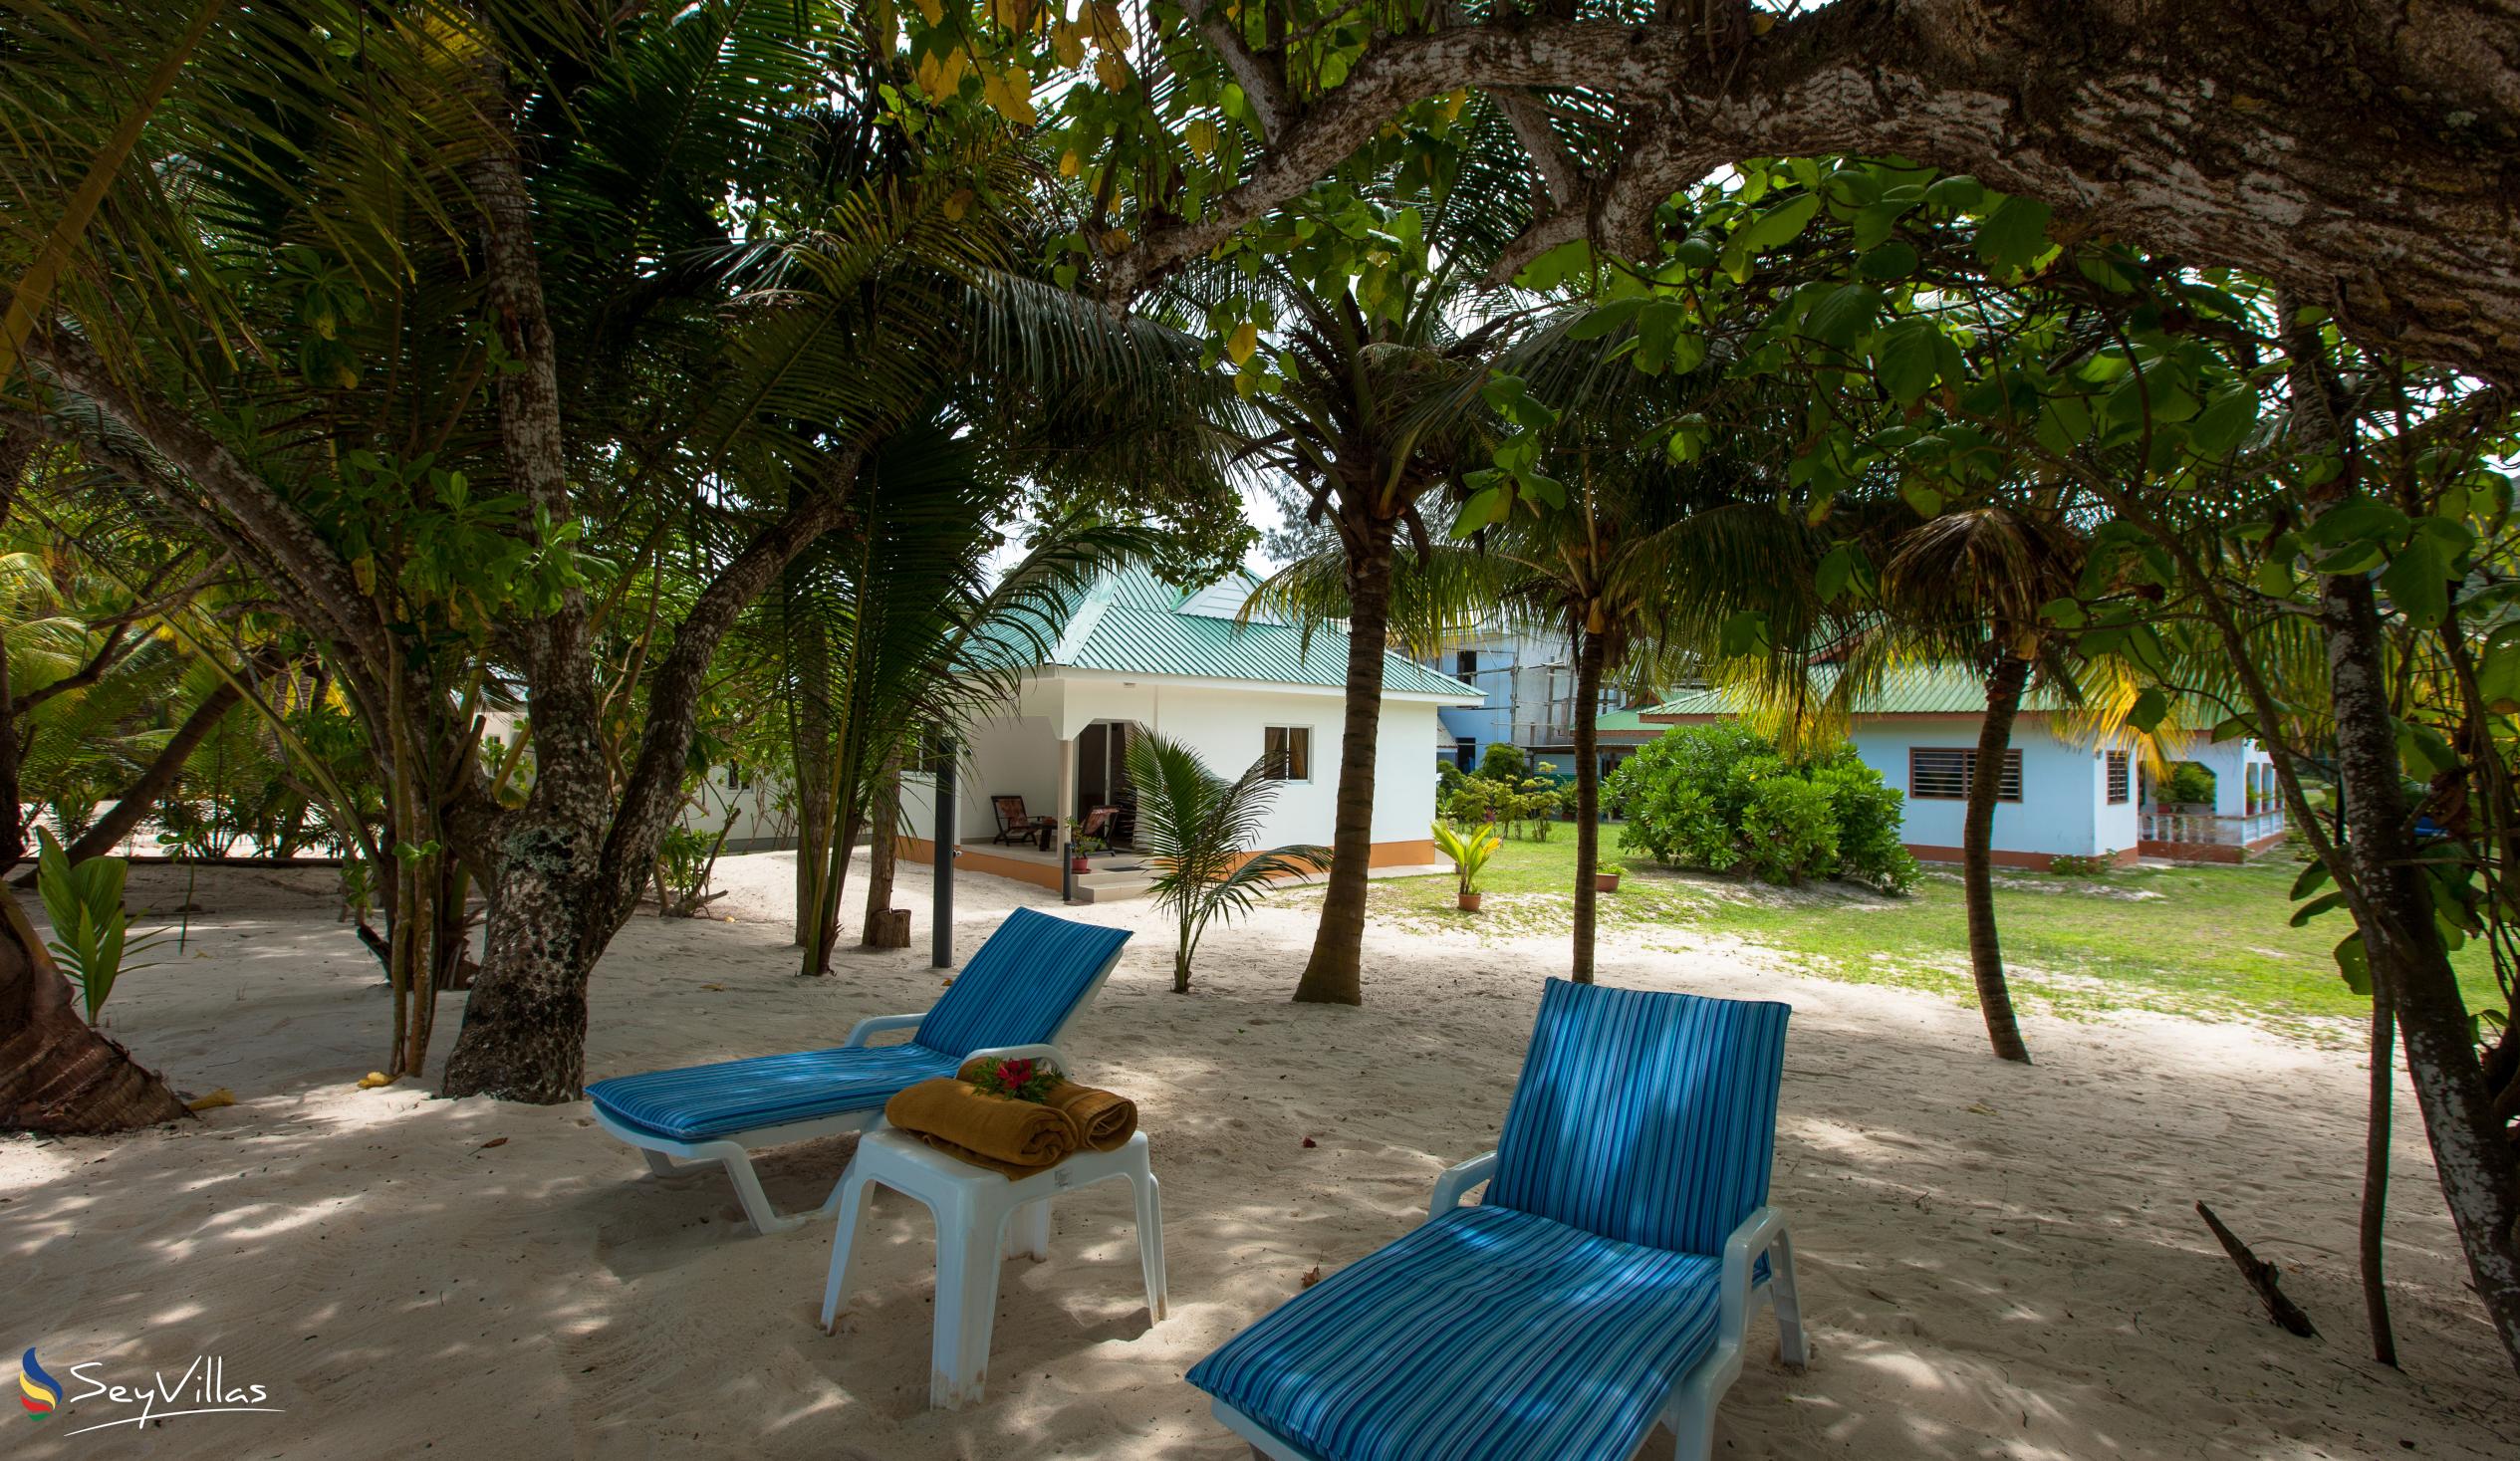 Foto 12: Villa Admiral - Aussenbereich - Praslin (Seychellen)